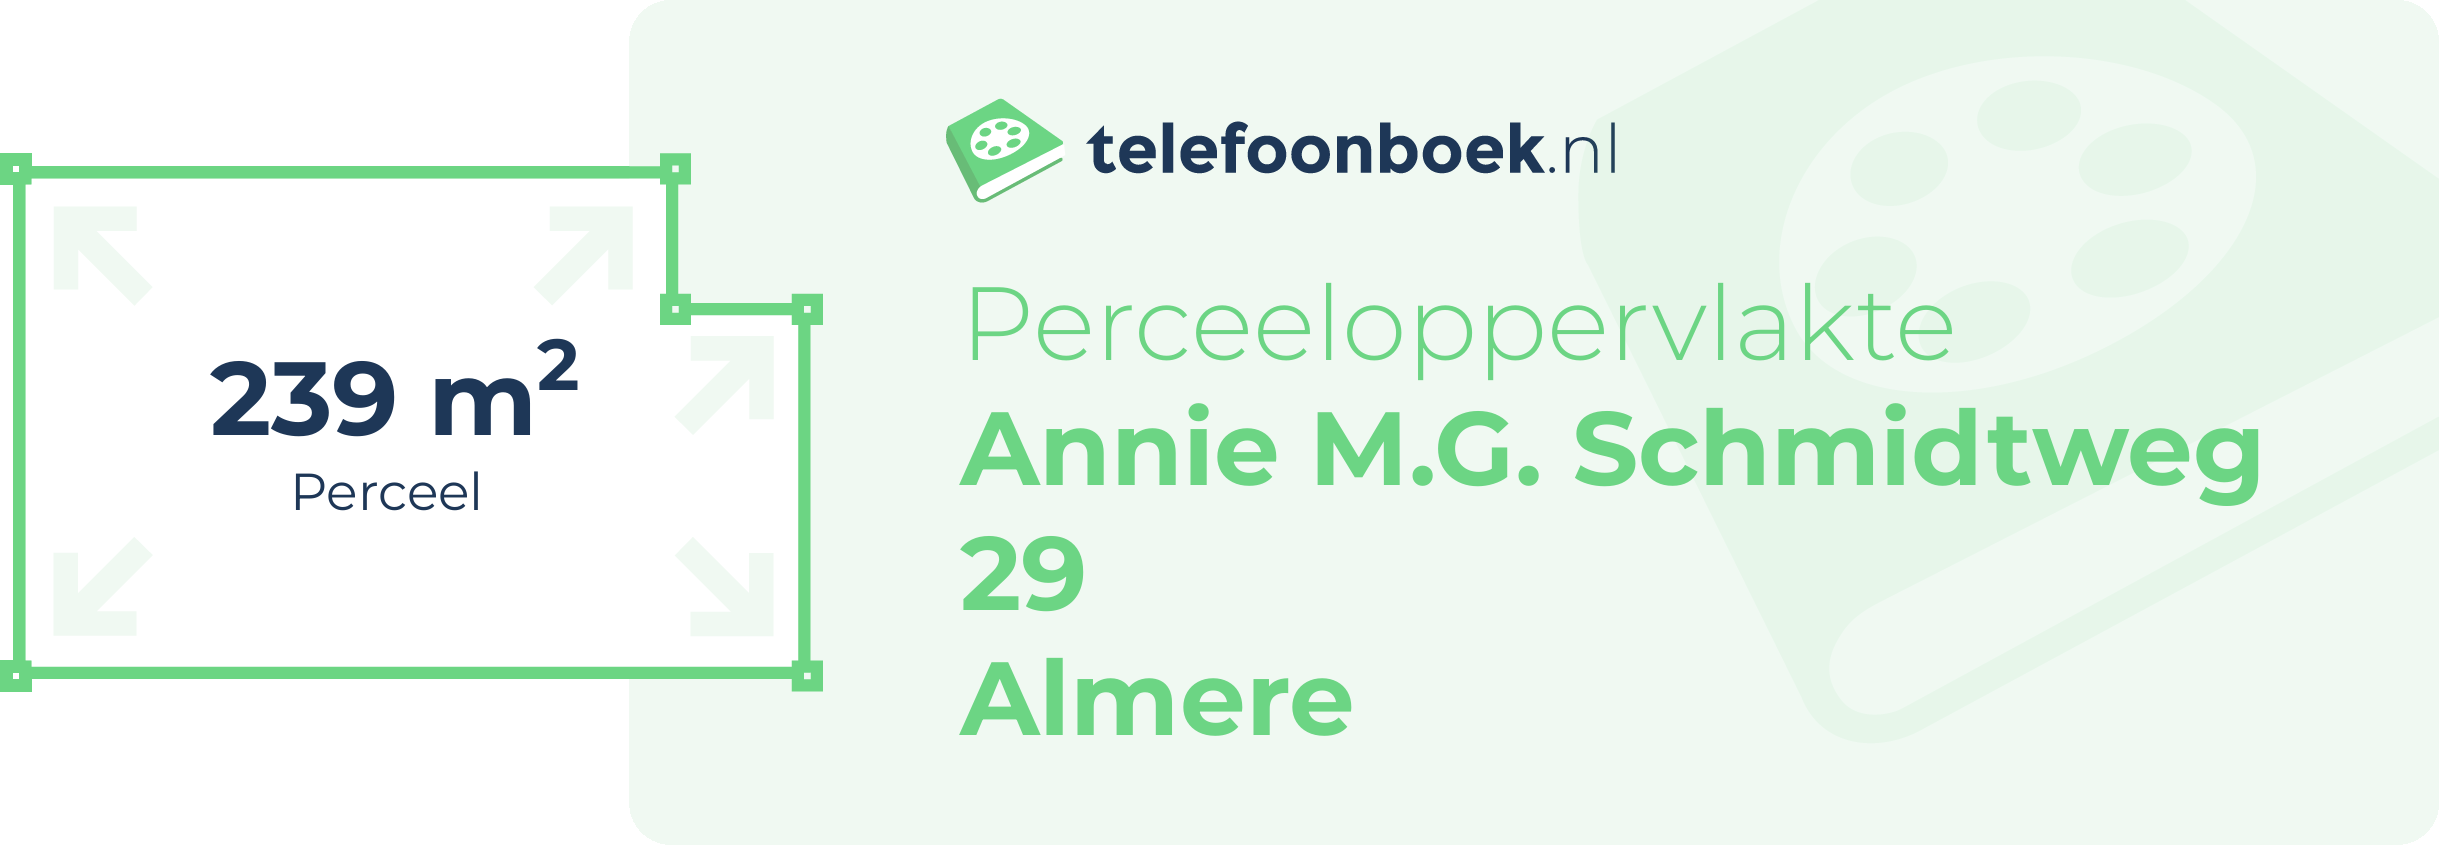 Perceeloppervlakte Annie M.G. Schmidtweg 29 Almere